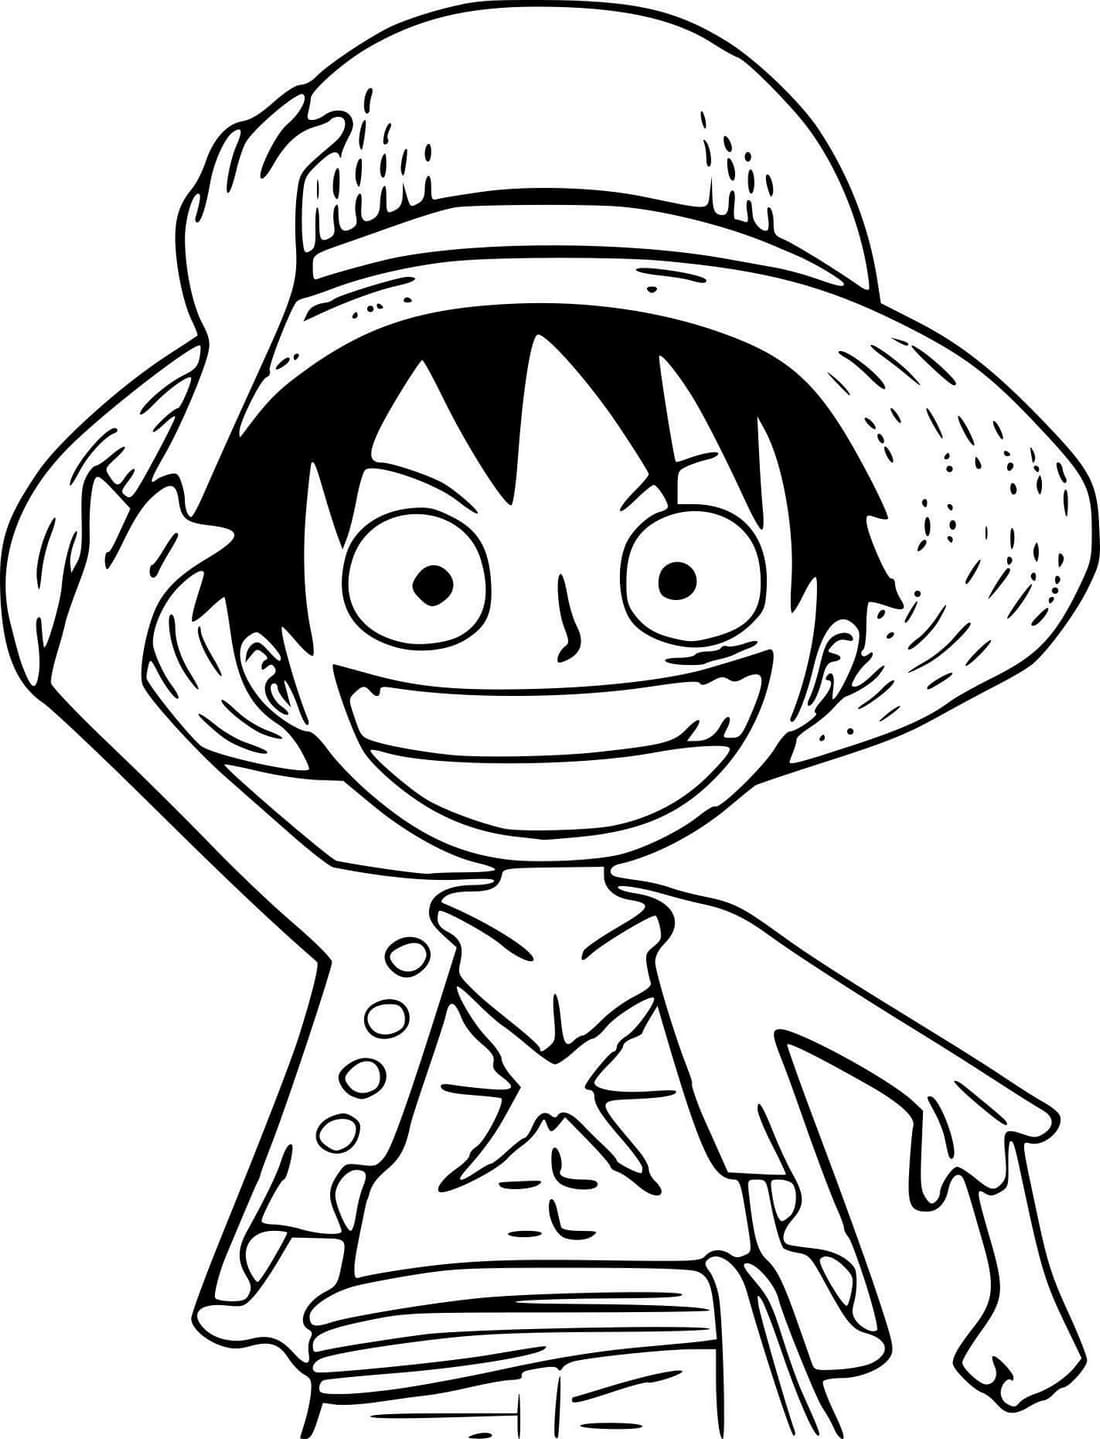 Dibujos para colorear One Piece - Descarga e imprime gratis